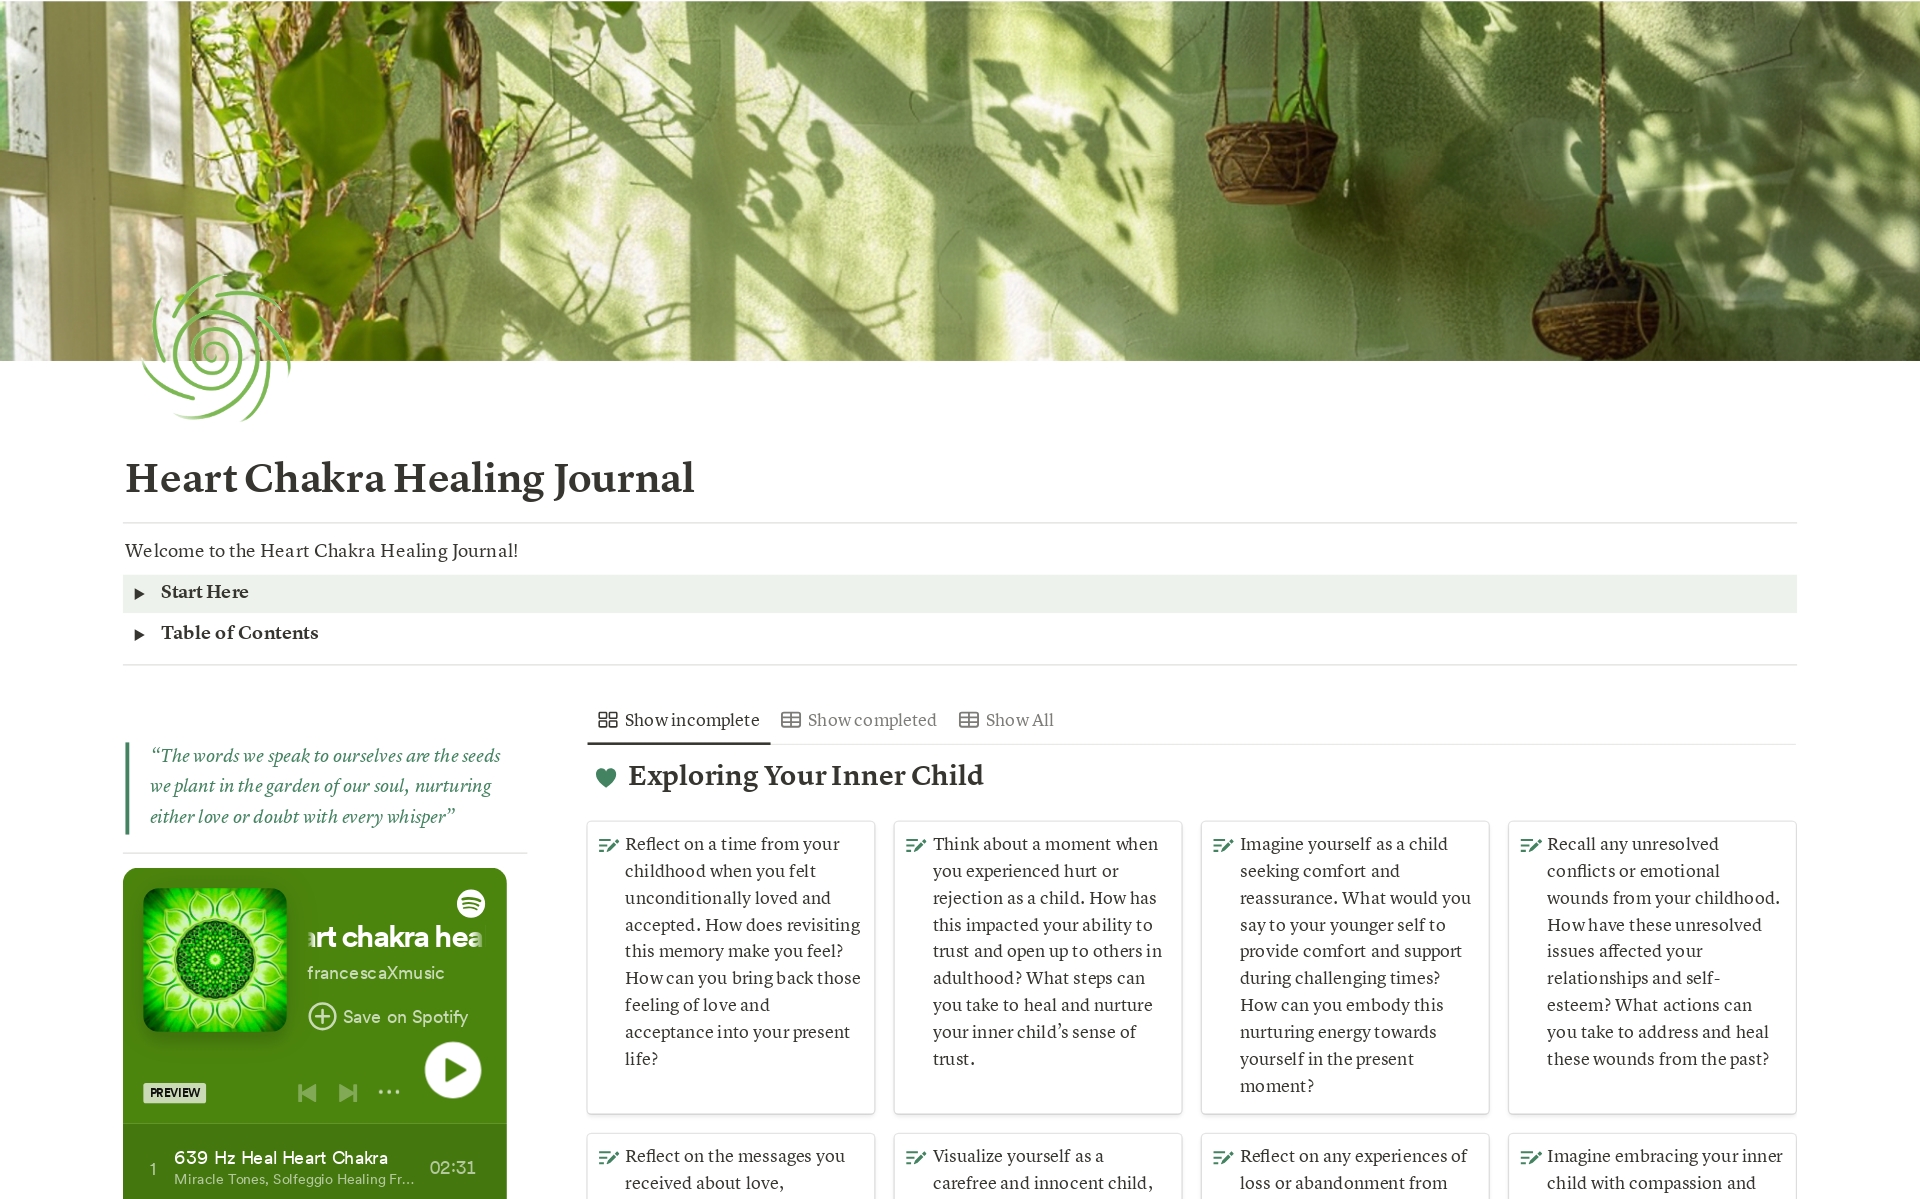 Vista previa de una plantilla para Heart Chakra Healing Journal